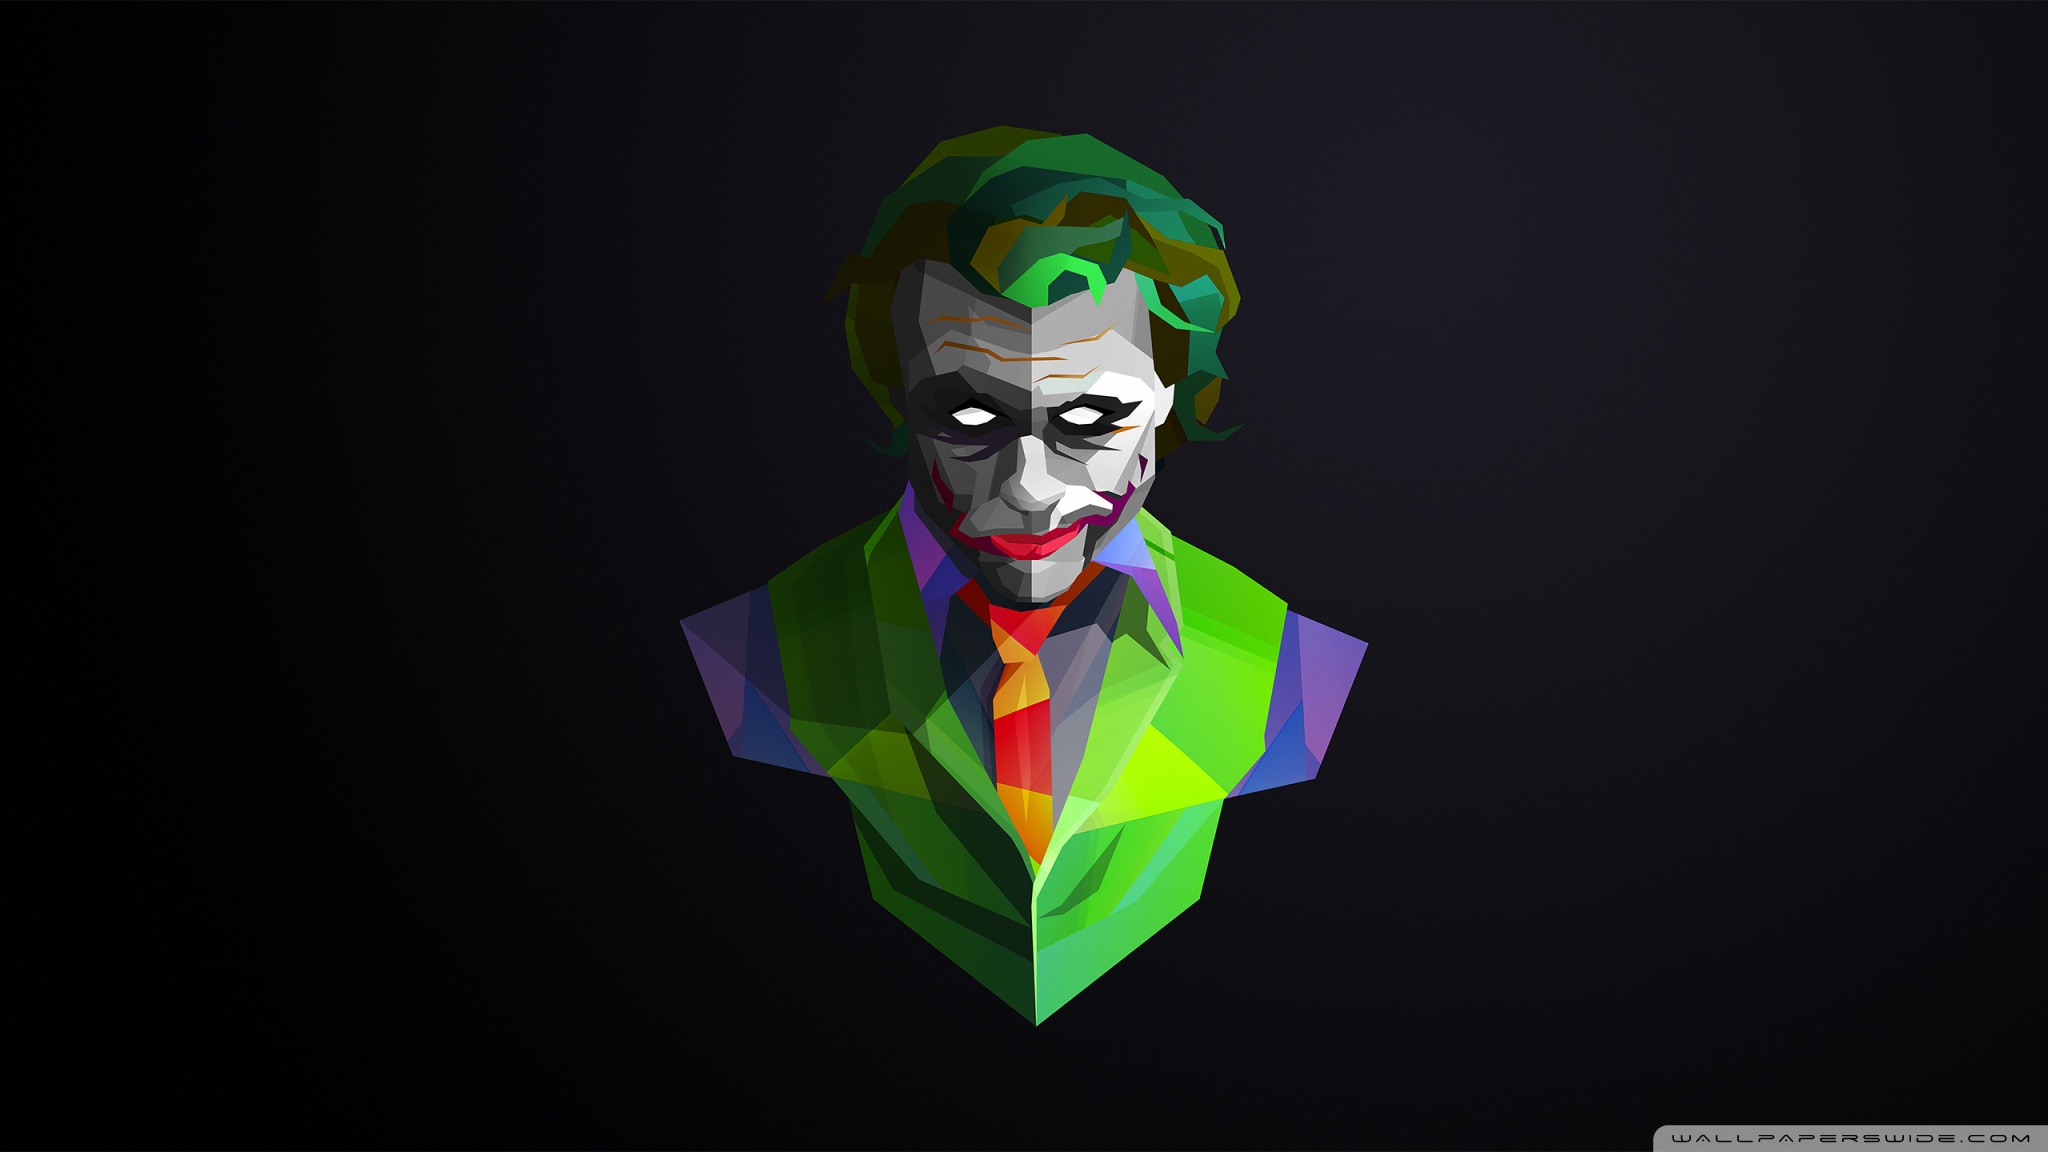 Chaos Clown Ultra Hd Desktop Background Wallpaper For Widescreen